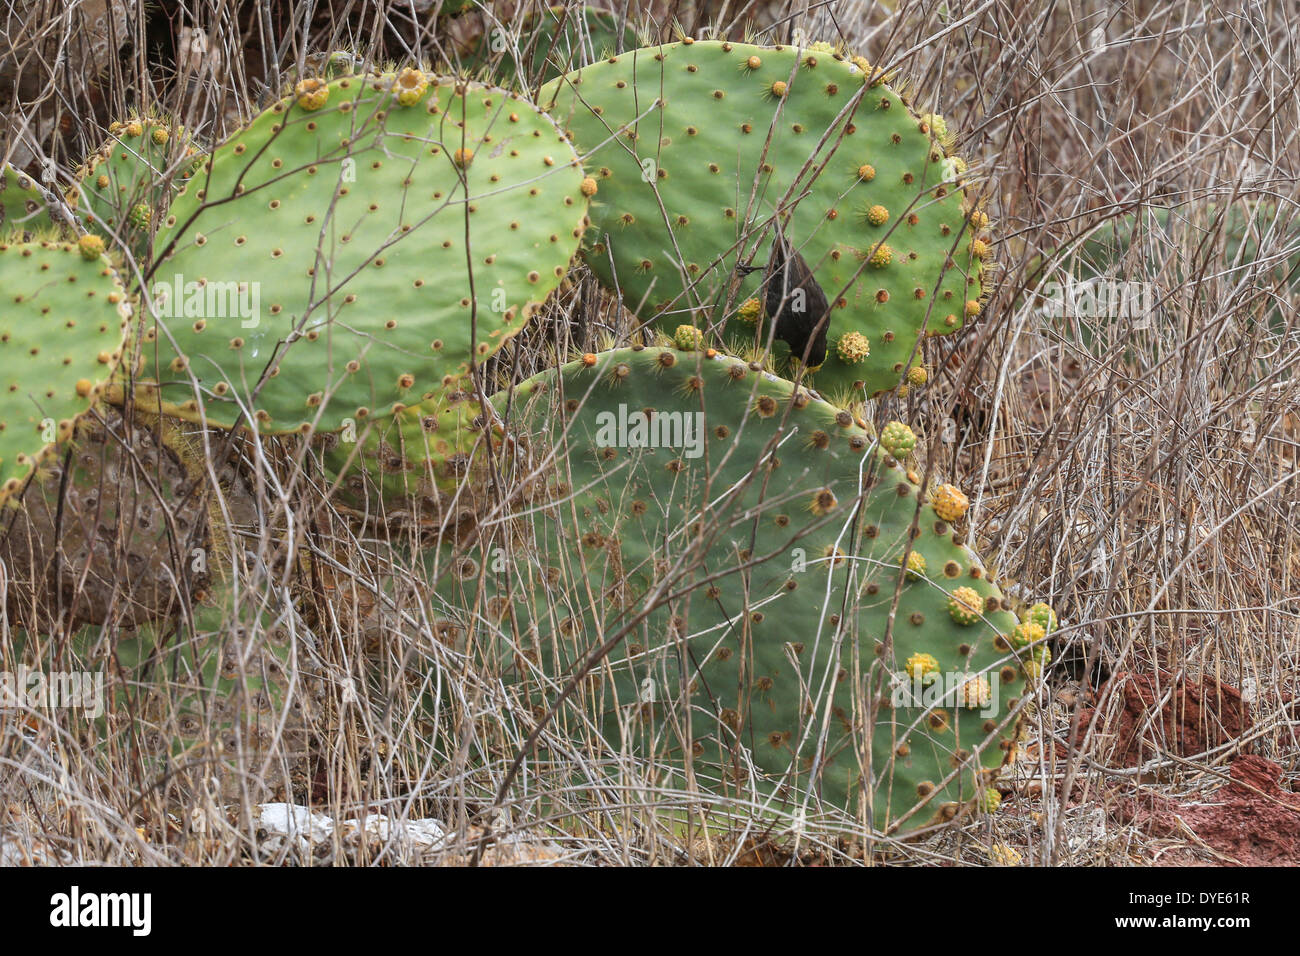 A Cactus Finch feeding on a cactus plant on Rabida Island, Galapagos Islands, Ecuador. Stock Photo